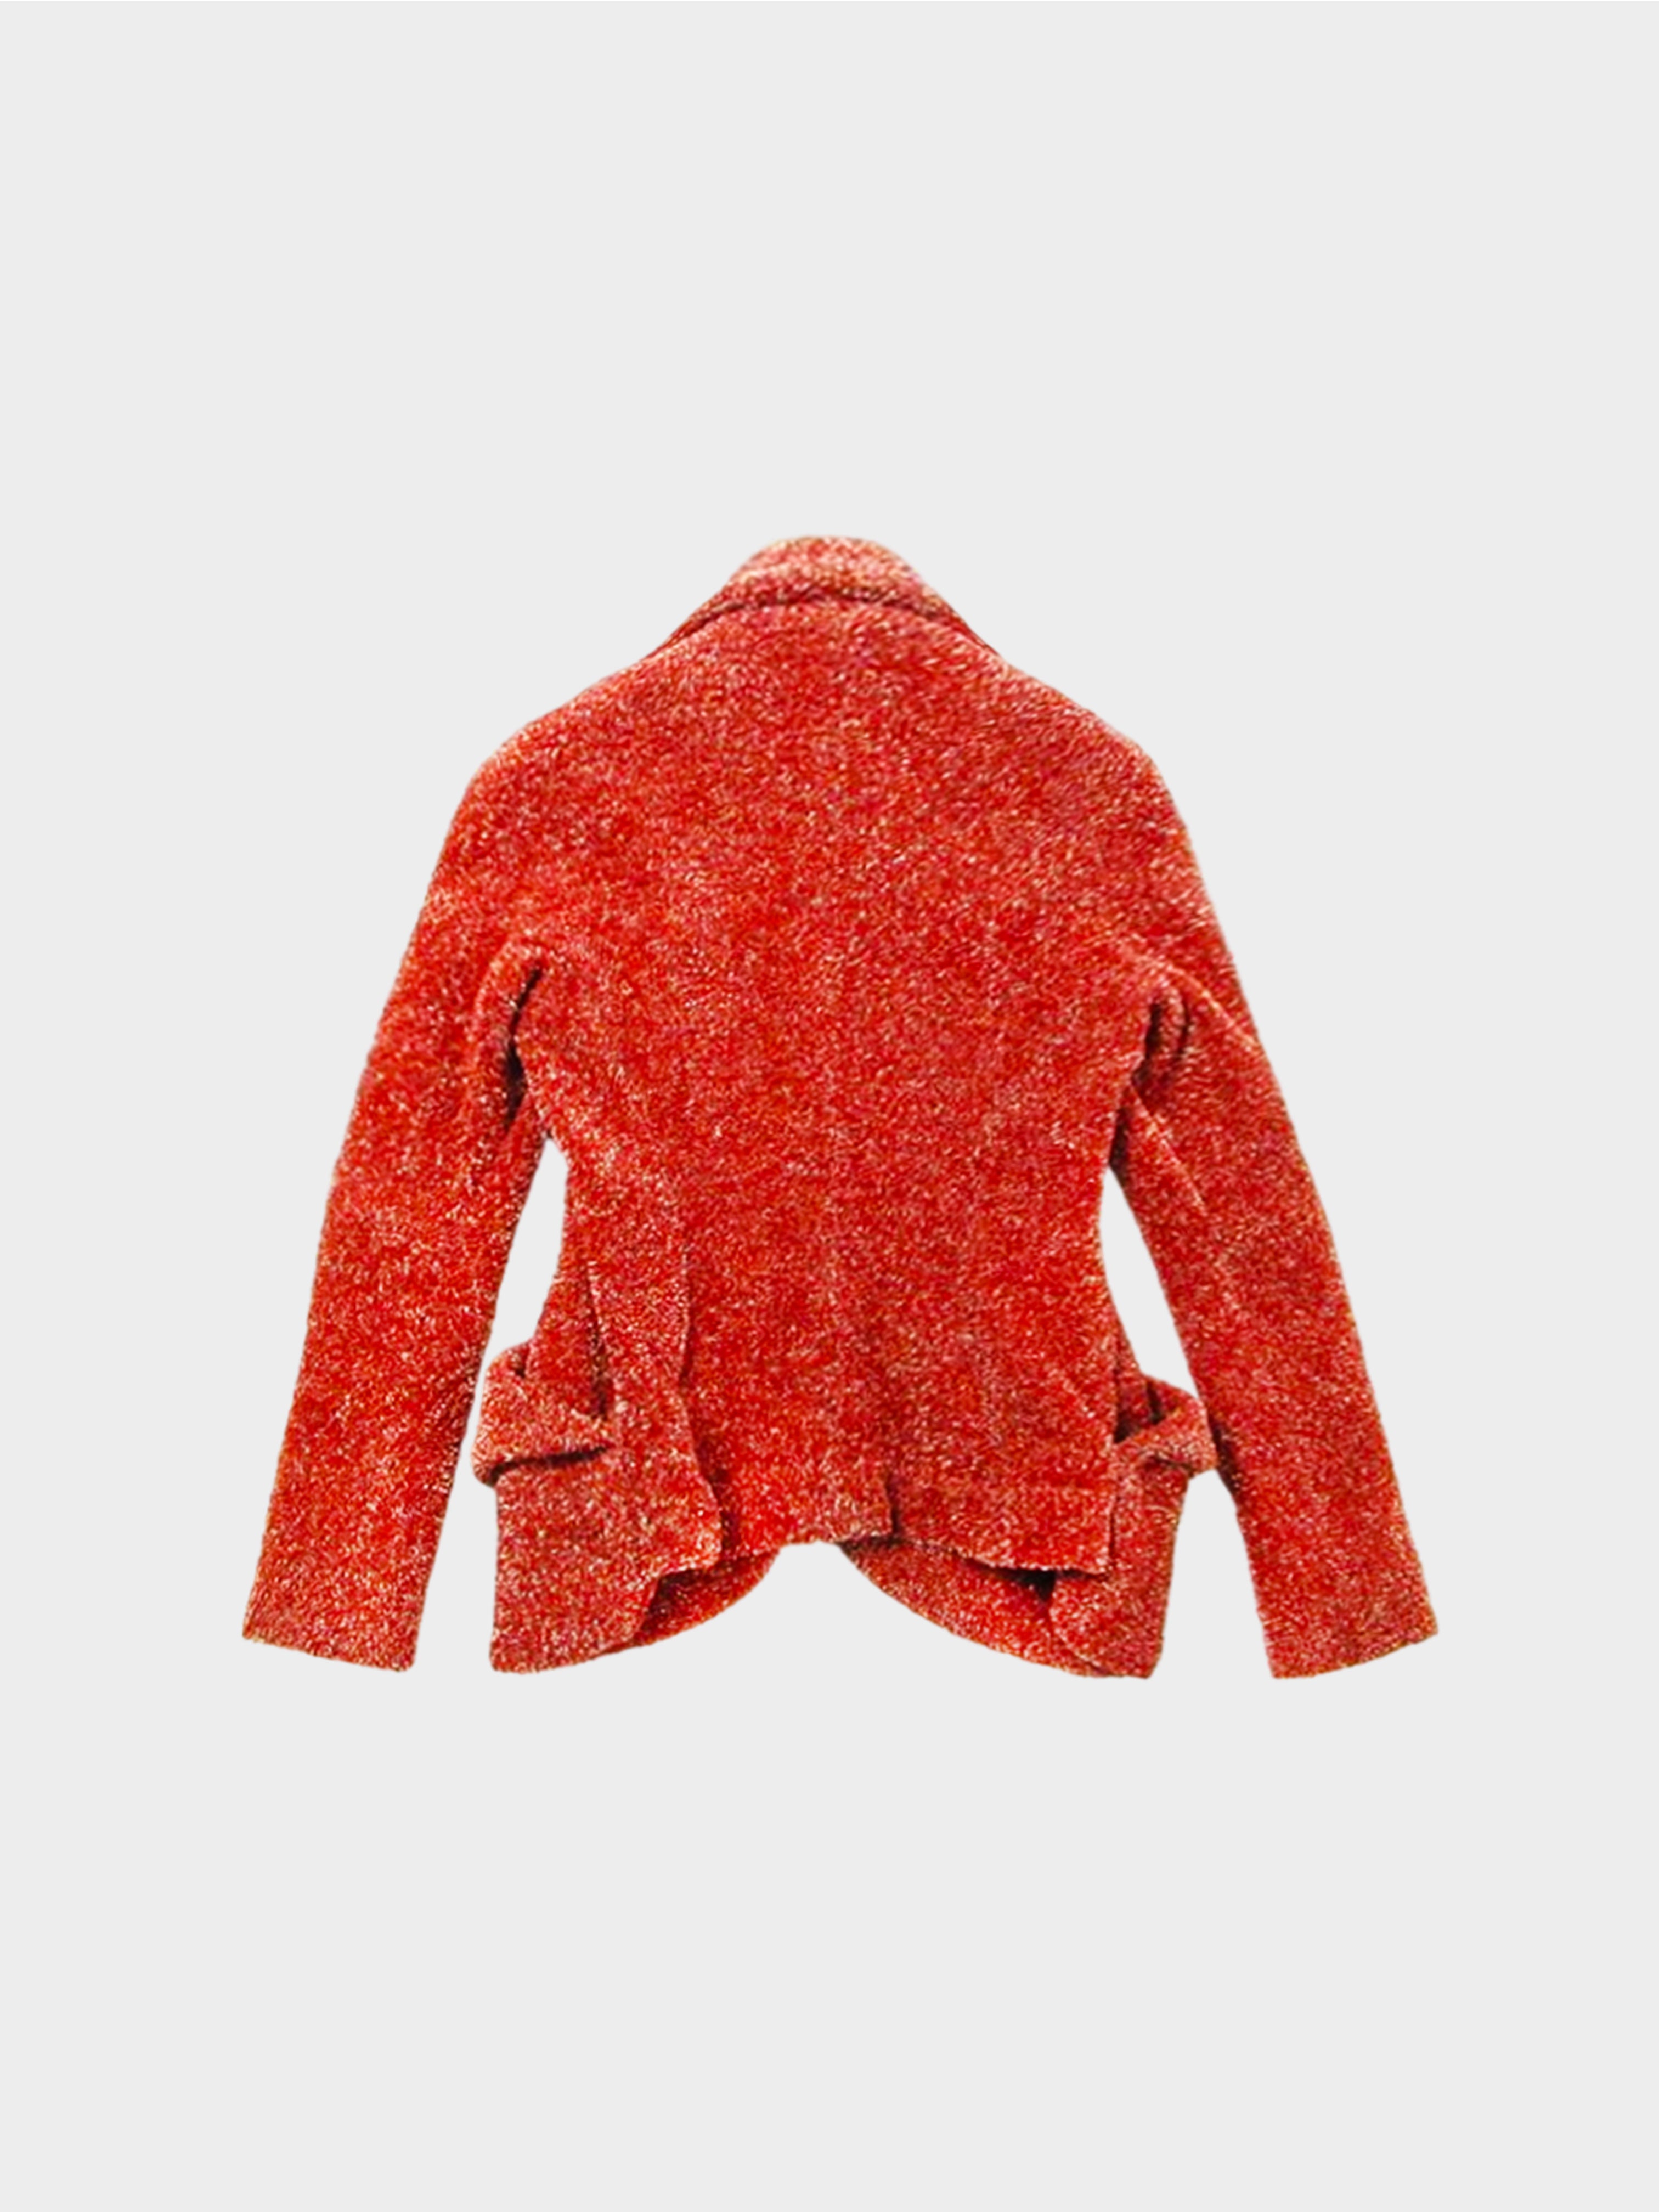 Vivienne Westwood FW 1998 Rare Red Tweed Early Love Jacket